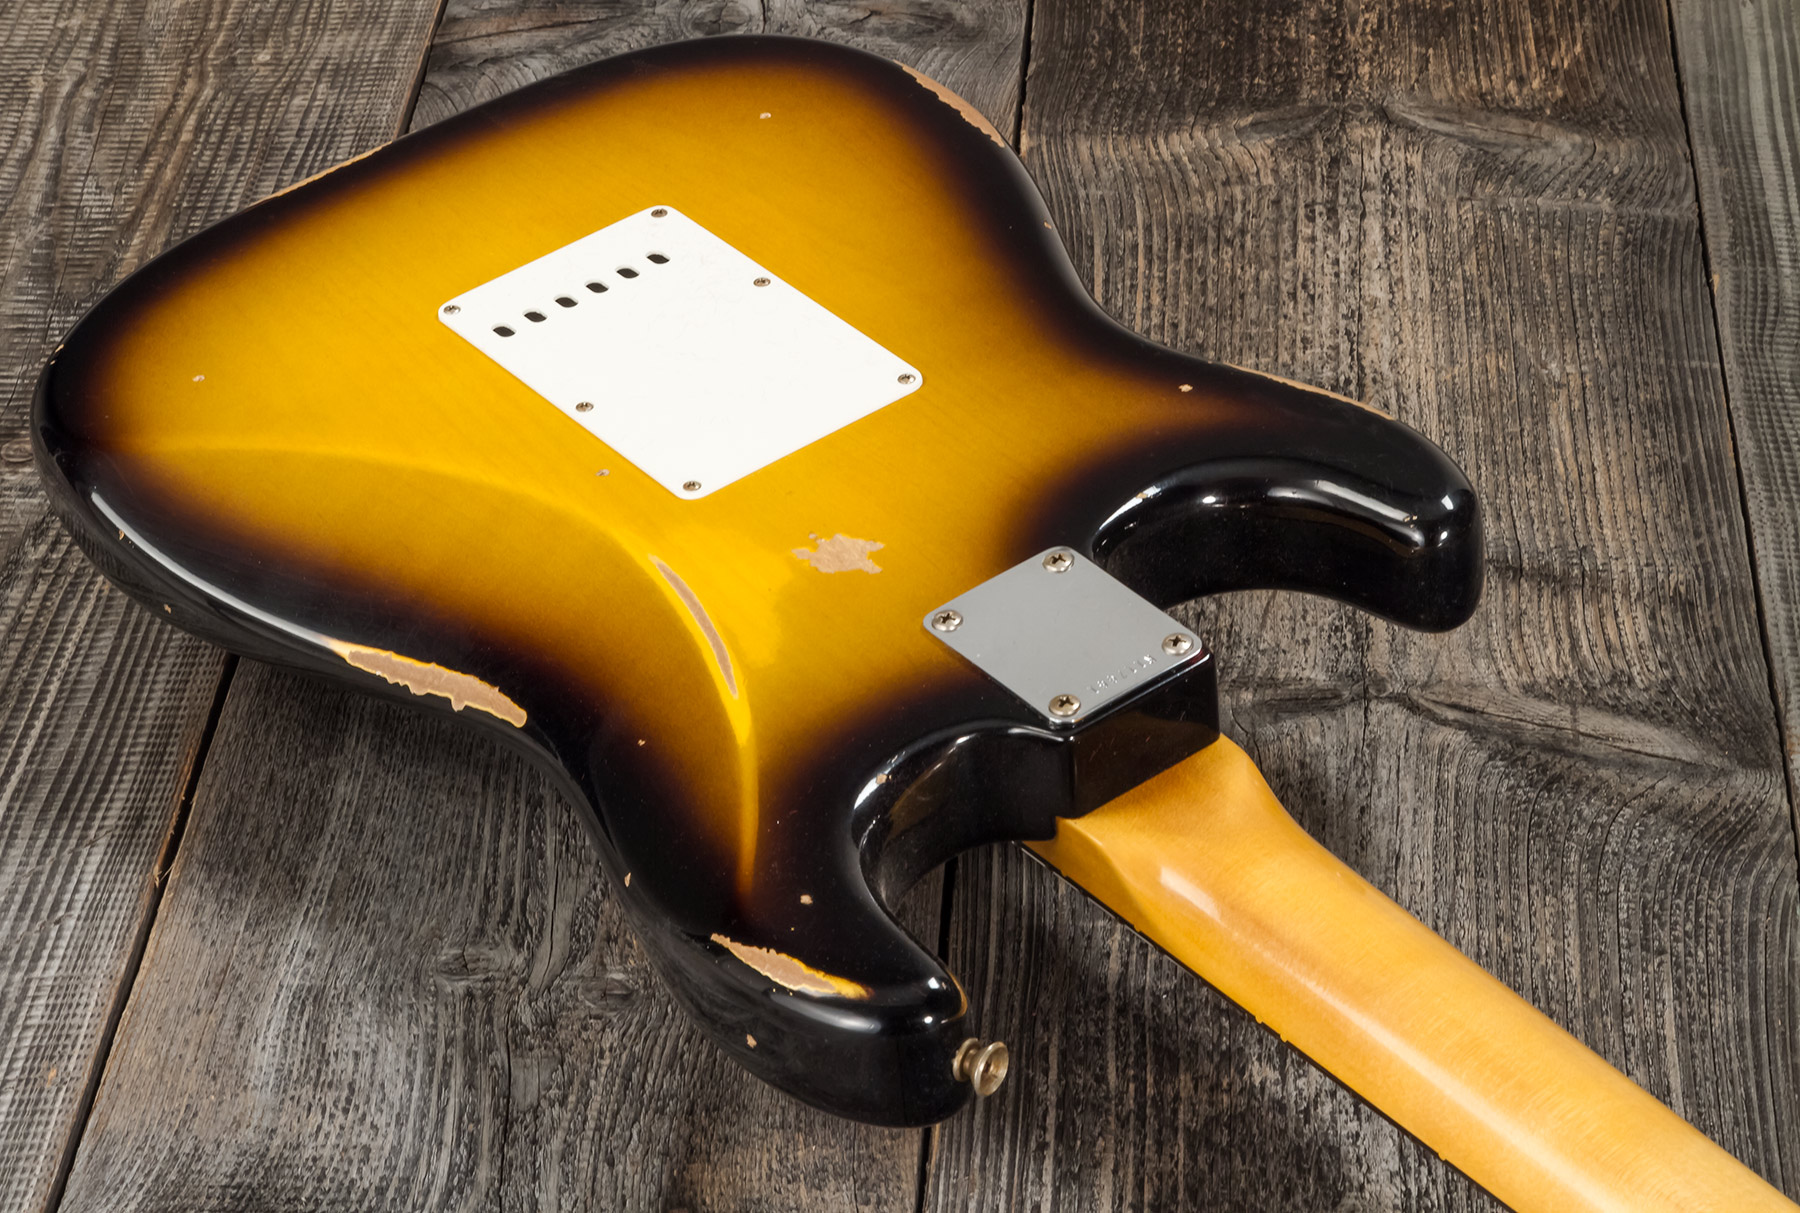 Fender Custom Shop Strat 1959 3s Trem Rw #r117661 - Relic 2-color Sunburst - Str shape electric guitar - Variation 4